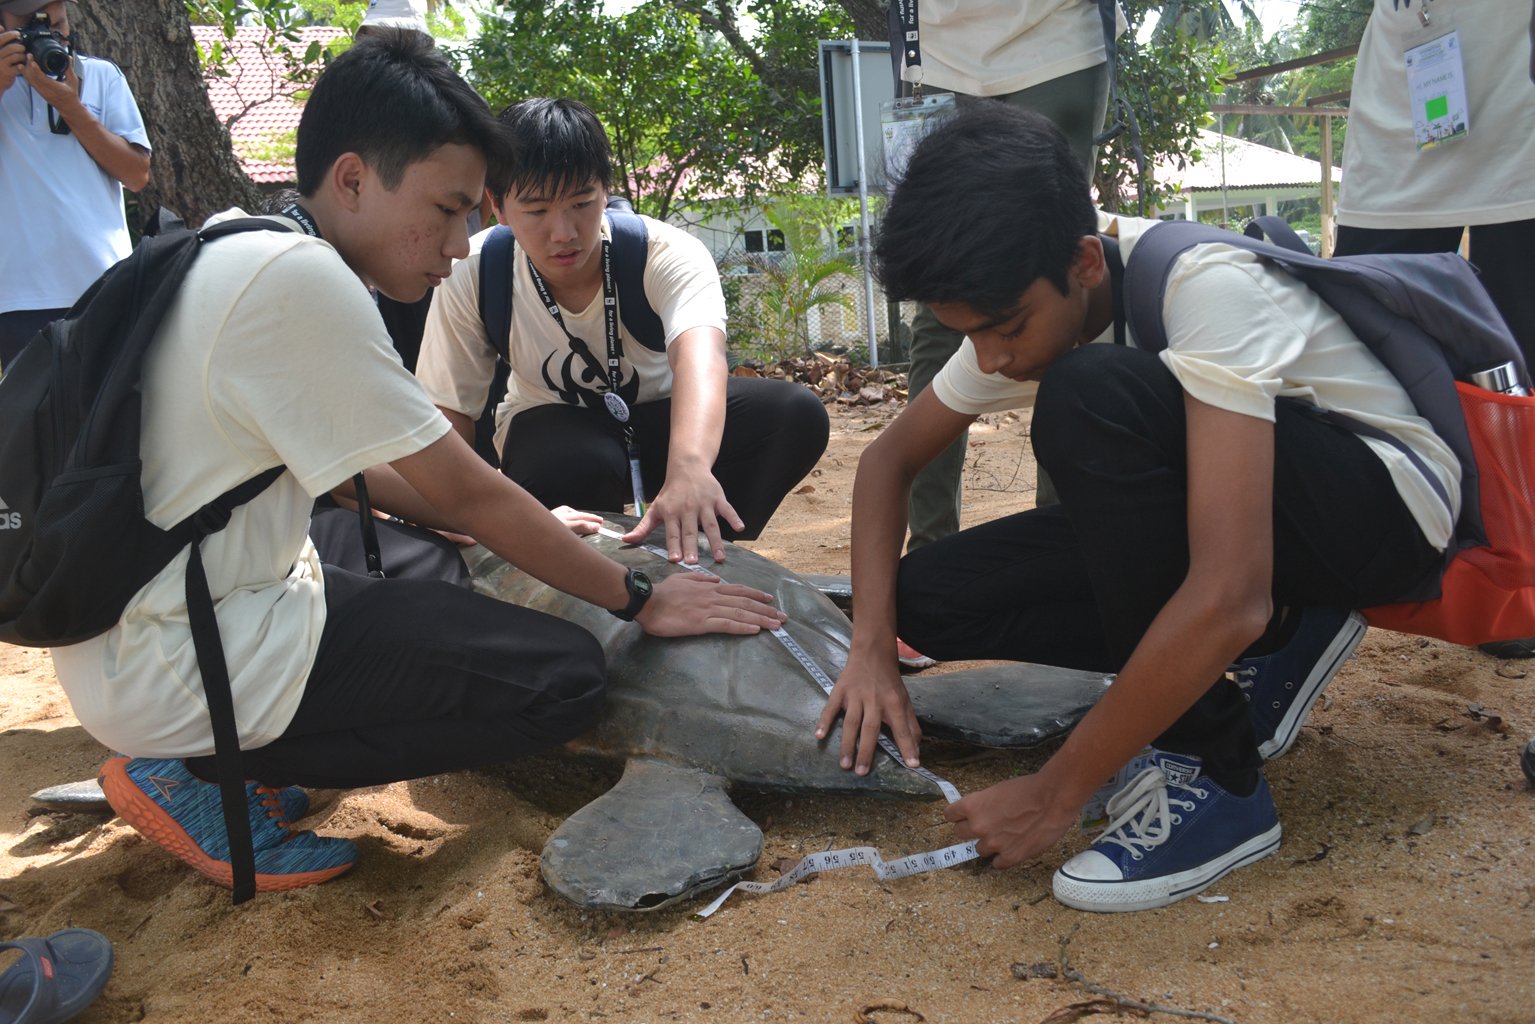 生态校园计划已在大马落实10年，目前累积超过200间学校注册参与，在人力有限的情况下，世界自然基金会大马分会的生态校园计划经理赵珮晶认为这已算是很好的进展。图为学生拜访海龟保育中心。（摄影：Rahana Husin/WWF Malaysia）